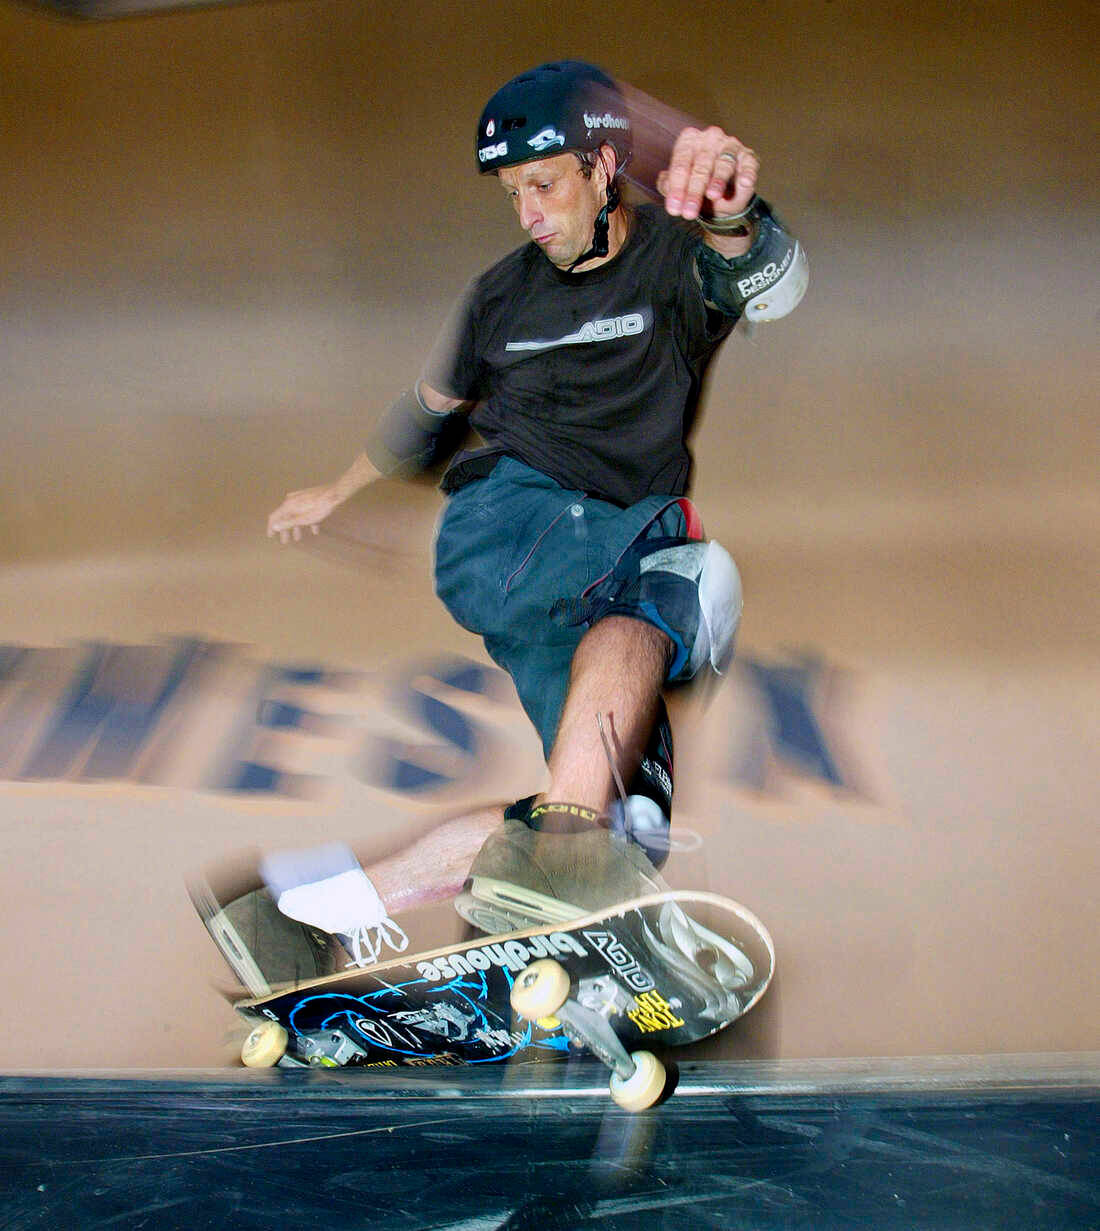 360 Spin Skateboarding Wallpaper